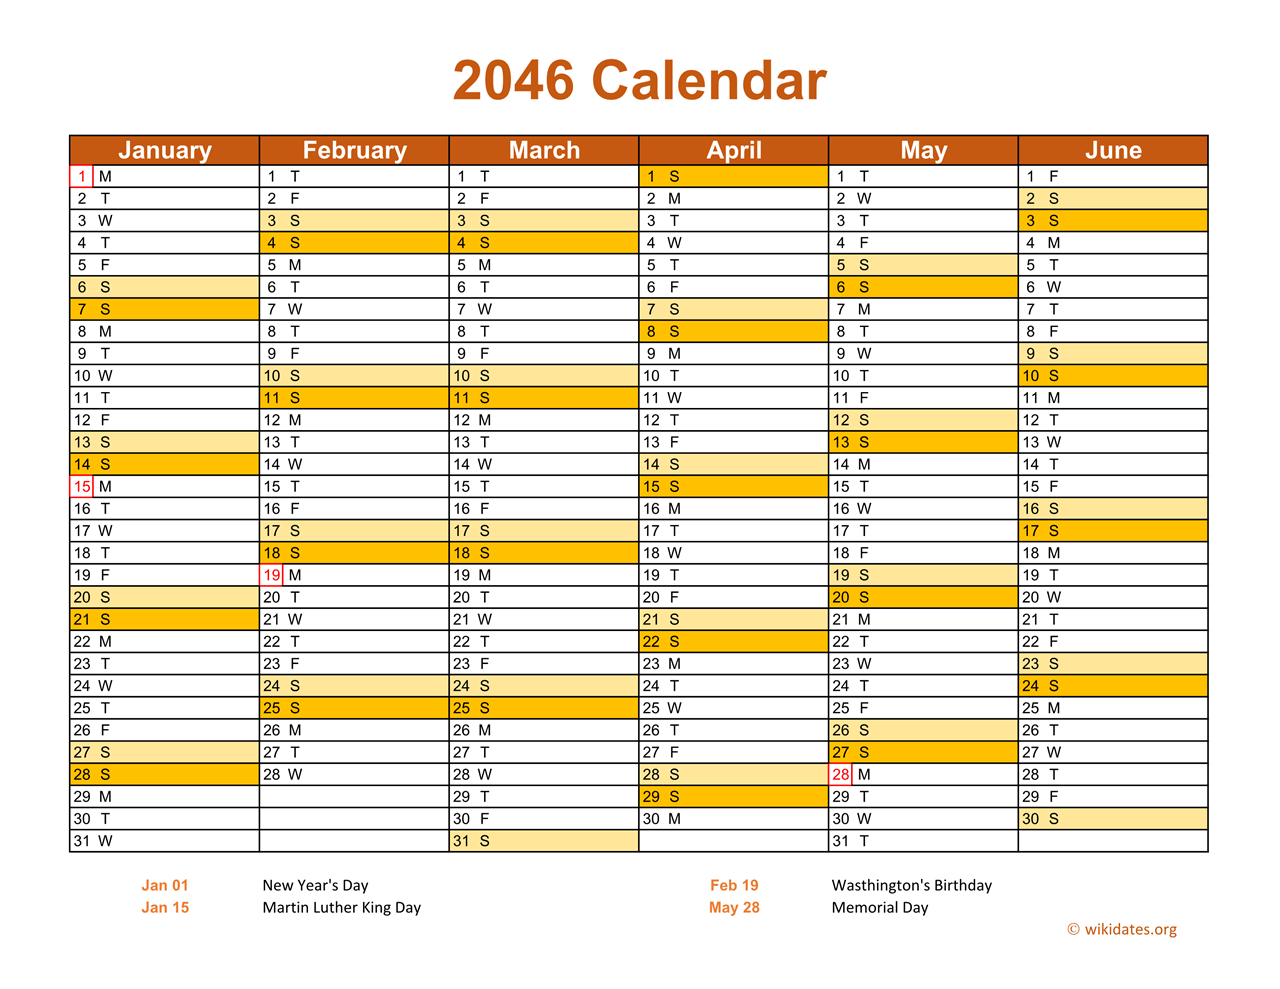 2046 Calendar On 2 Pages Landscape Orientation